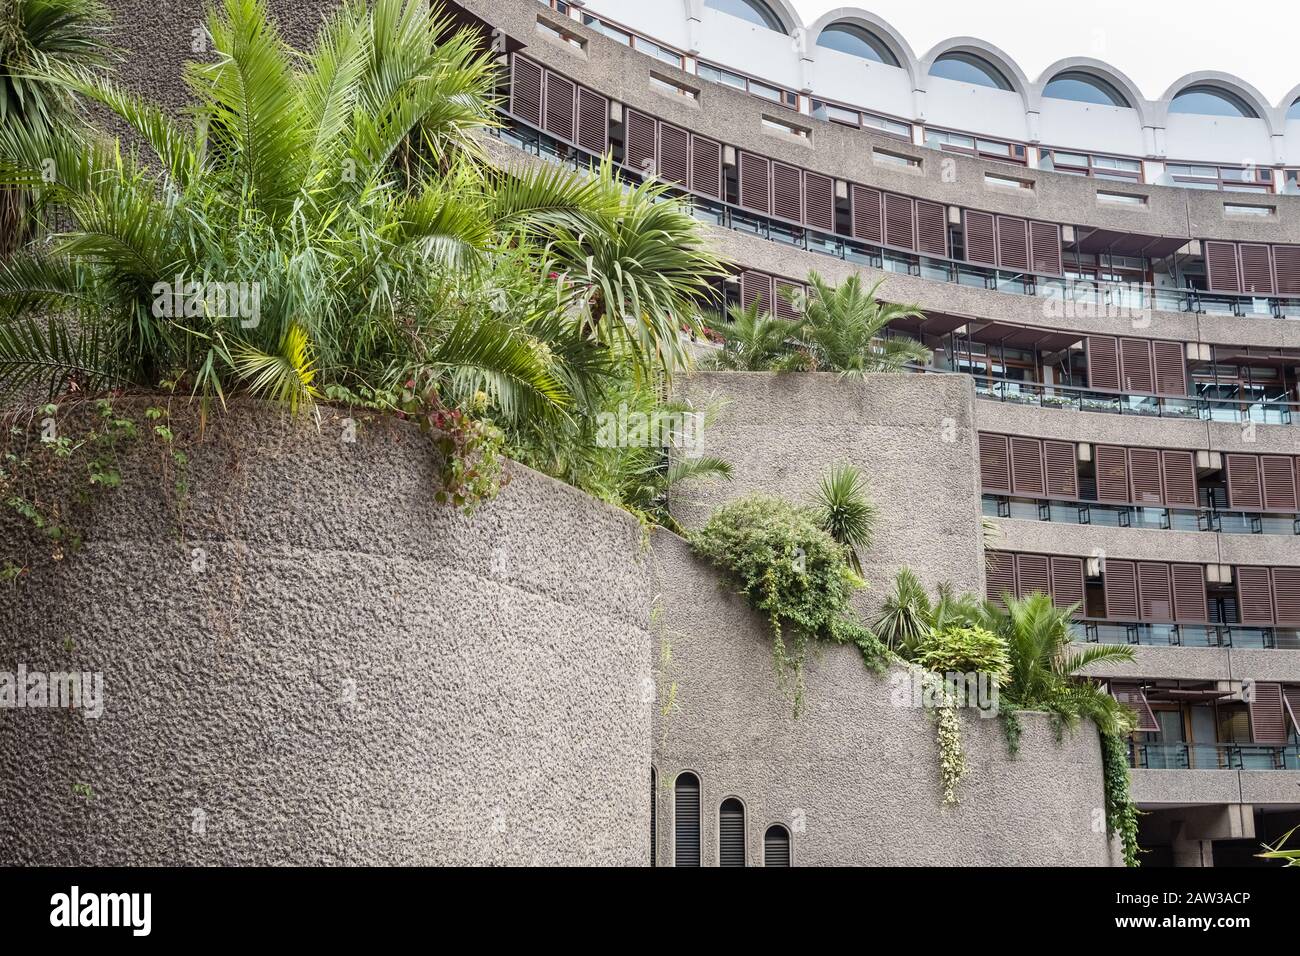 Grüne Gartenpflanzen mildern früher das Aussehen der brutalistischen Architektur, The Curve, Barbican, London, Großbritannien Stockfoto